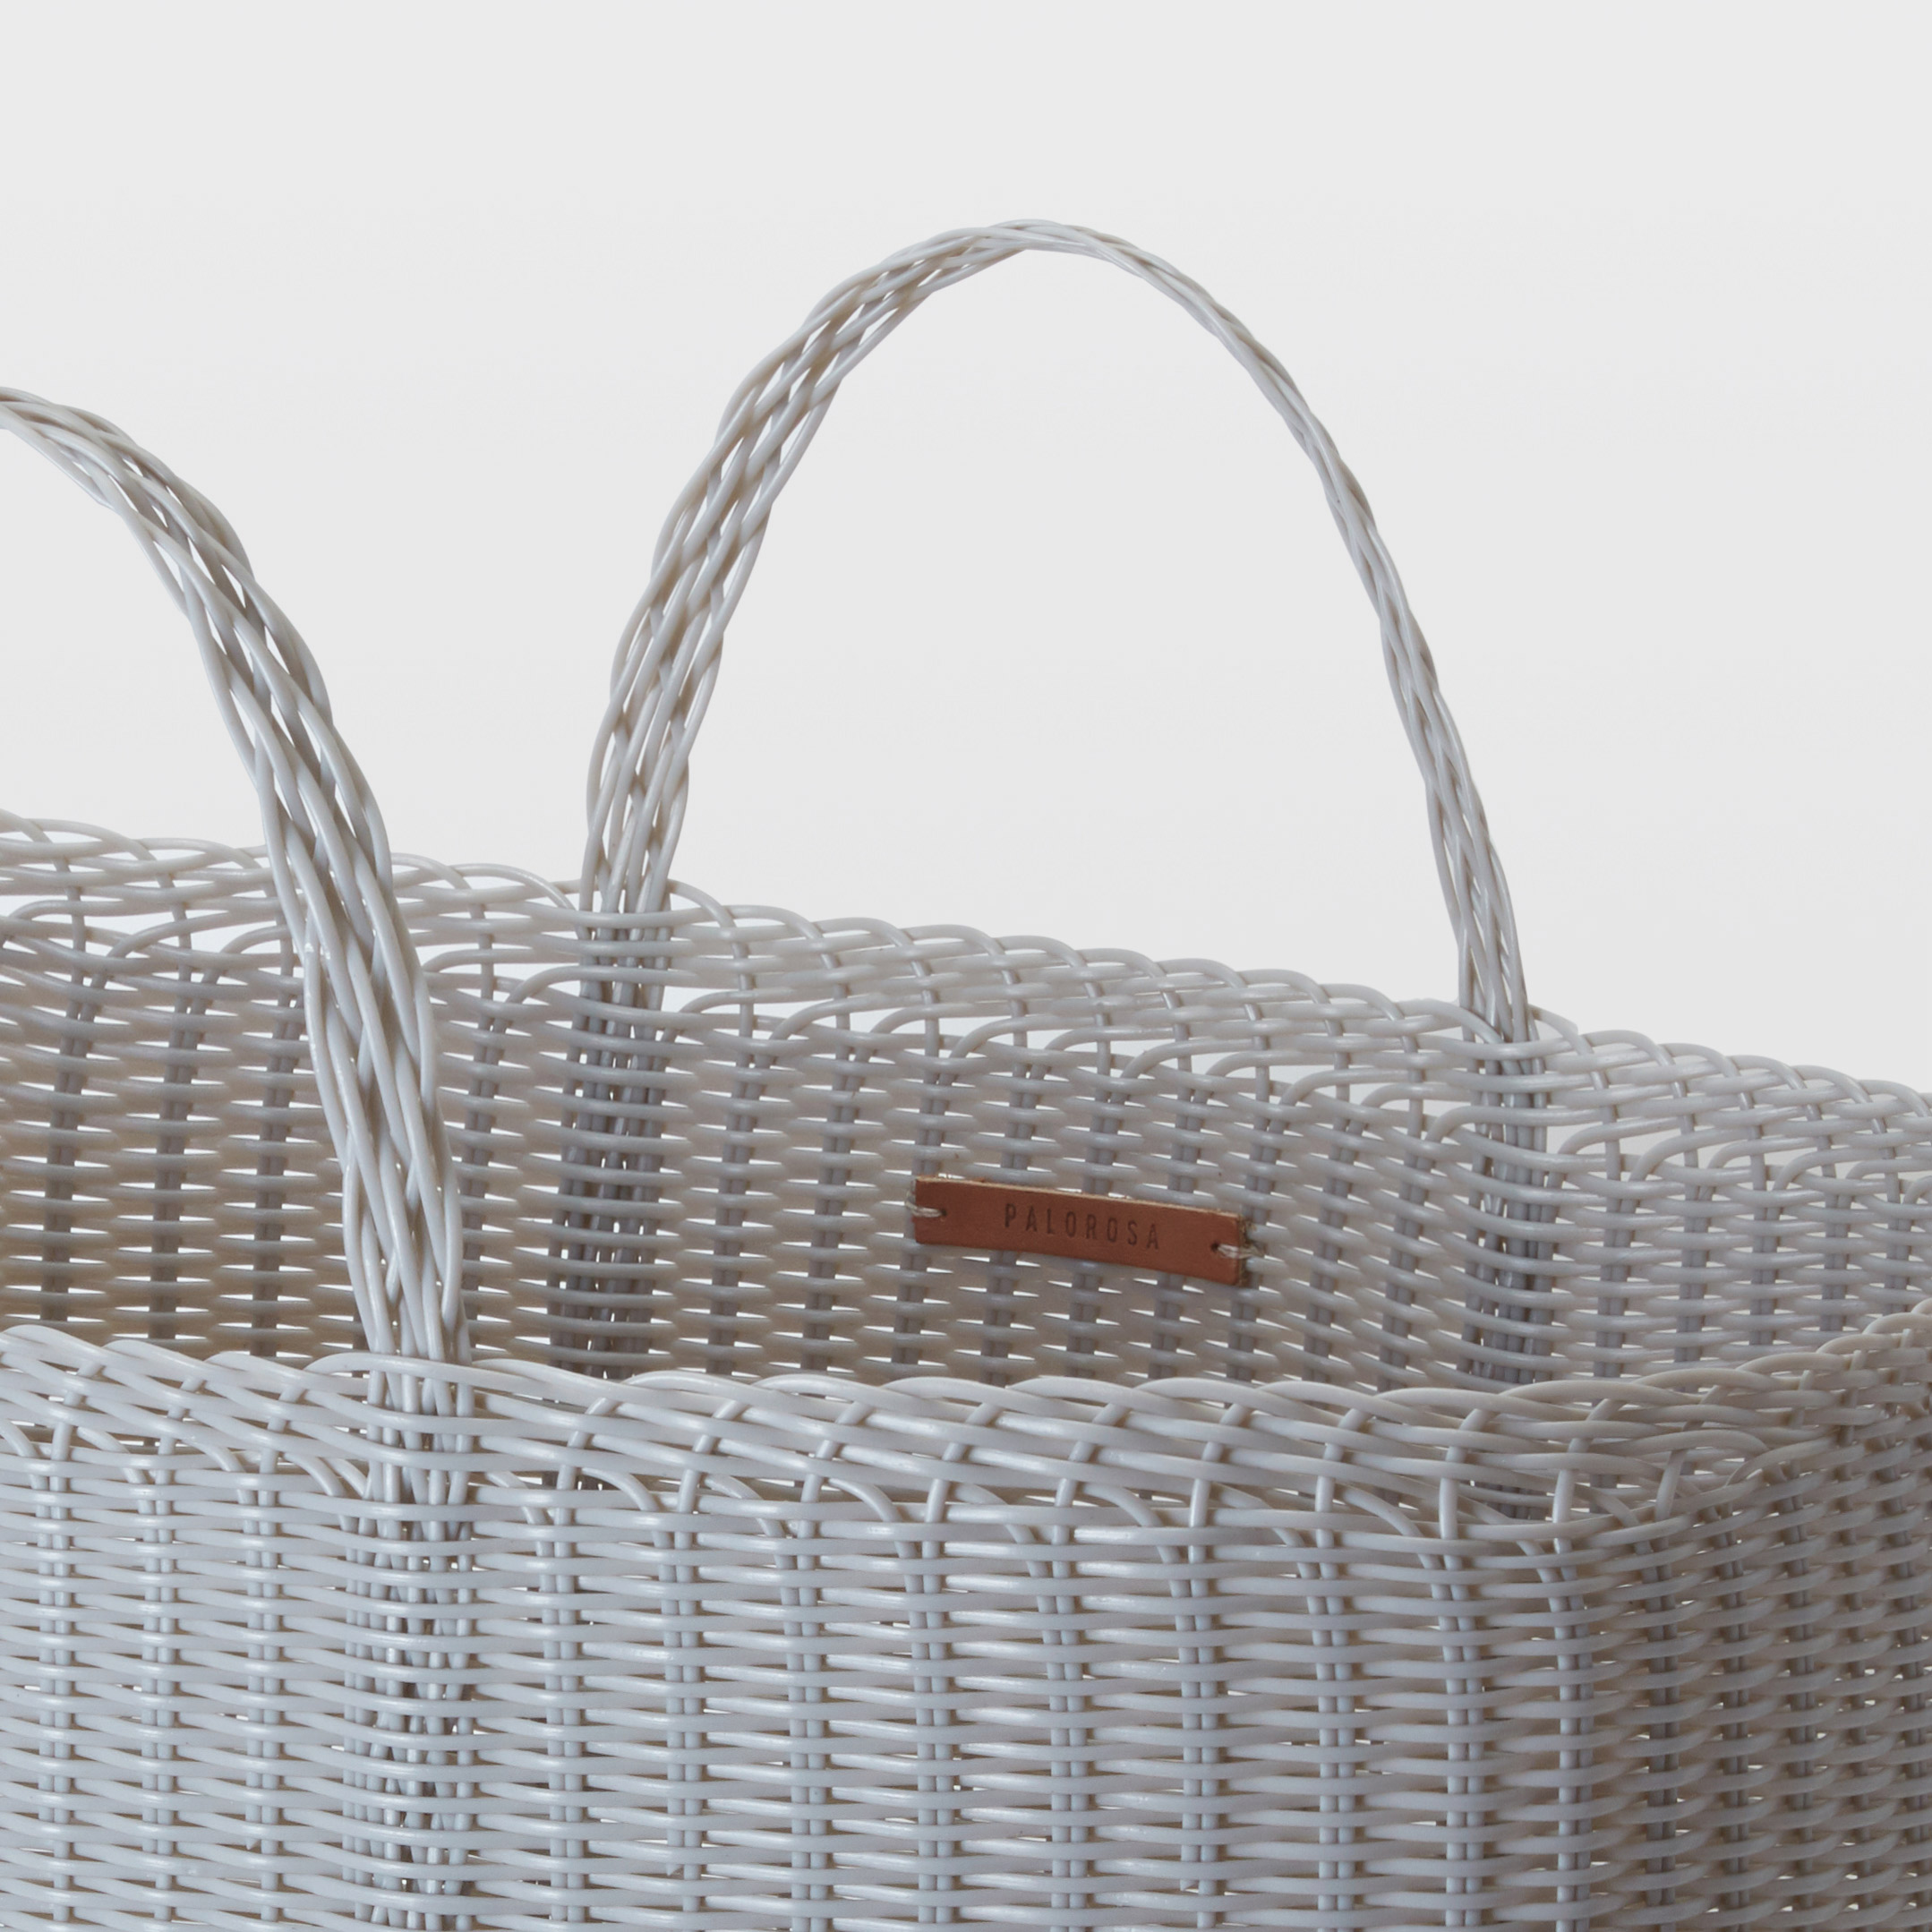 Basket | Extra Large Light Grey